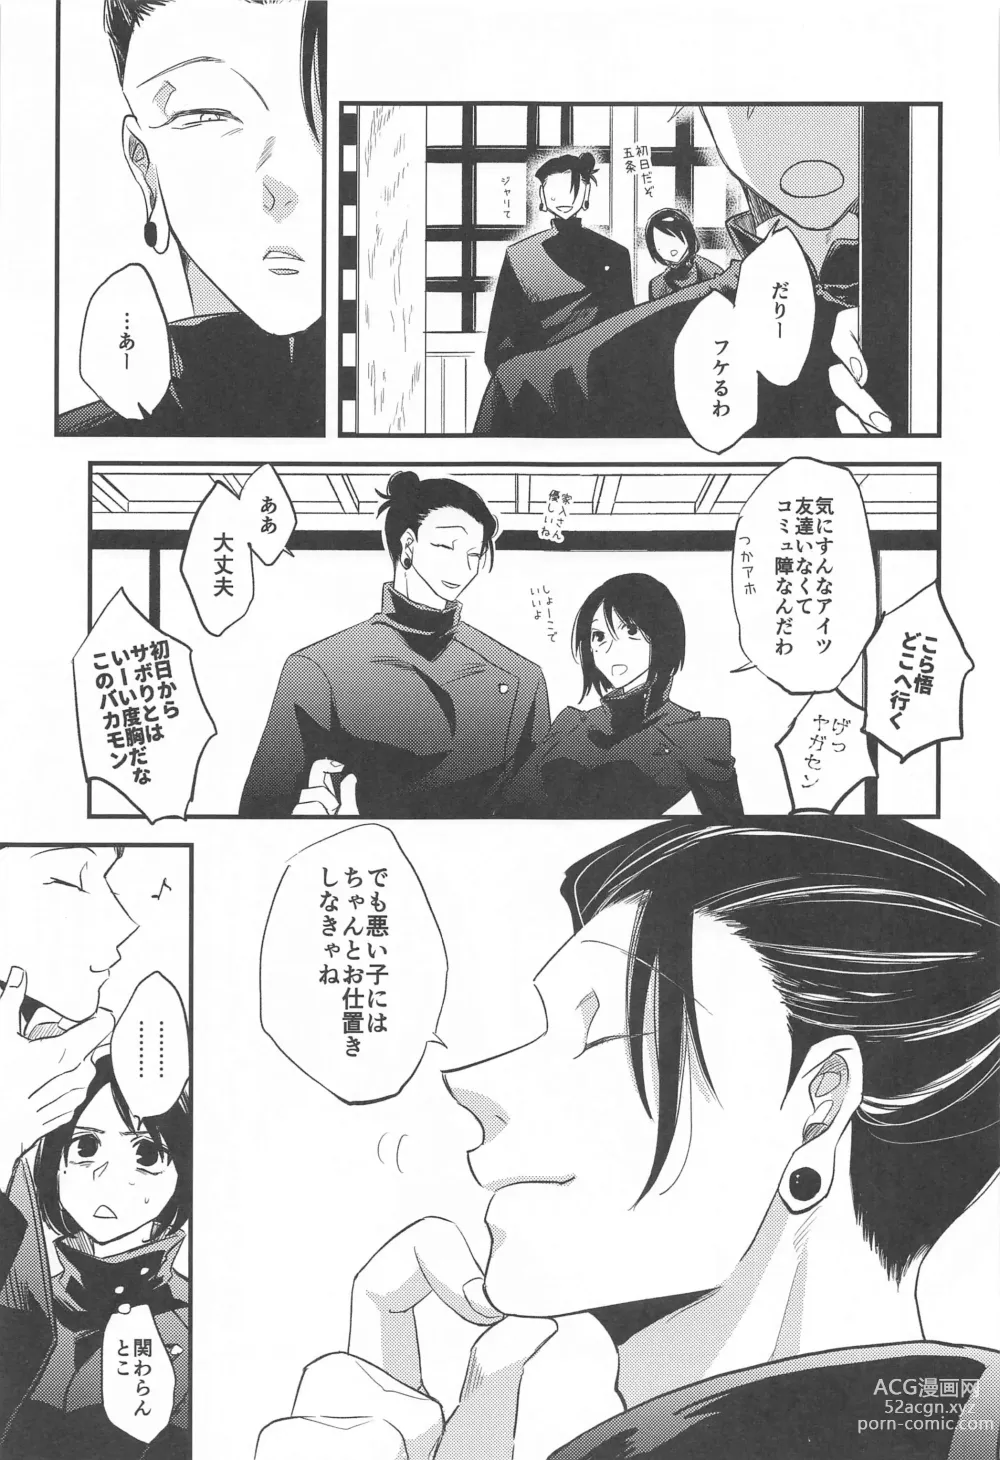 Page 6 of doujinshi Saikyou  x Kimeseku  x Sokuochi 2-koma